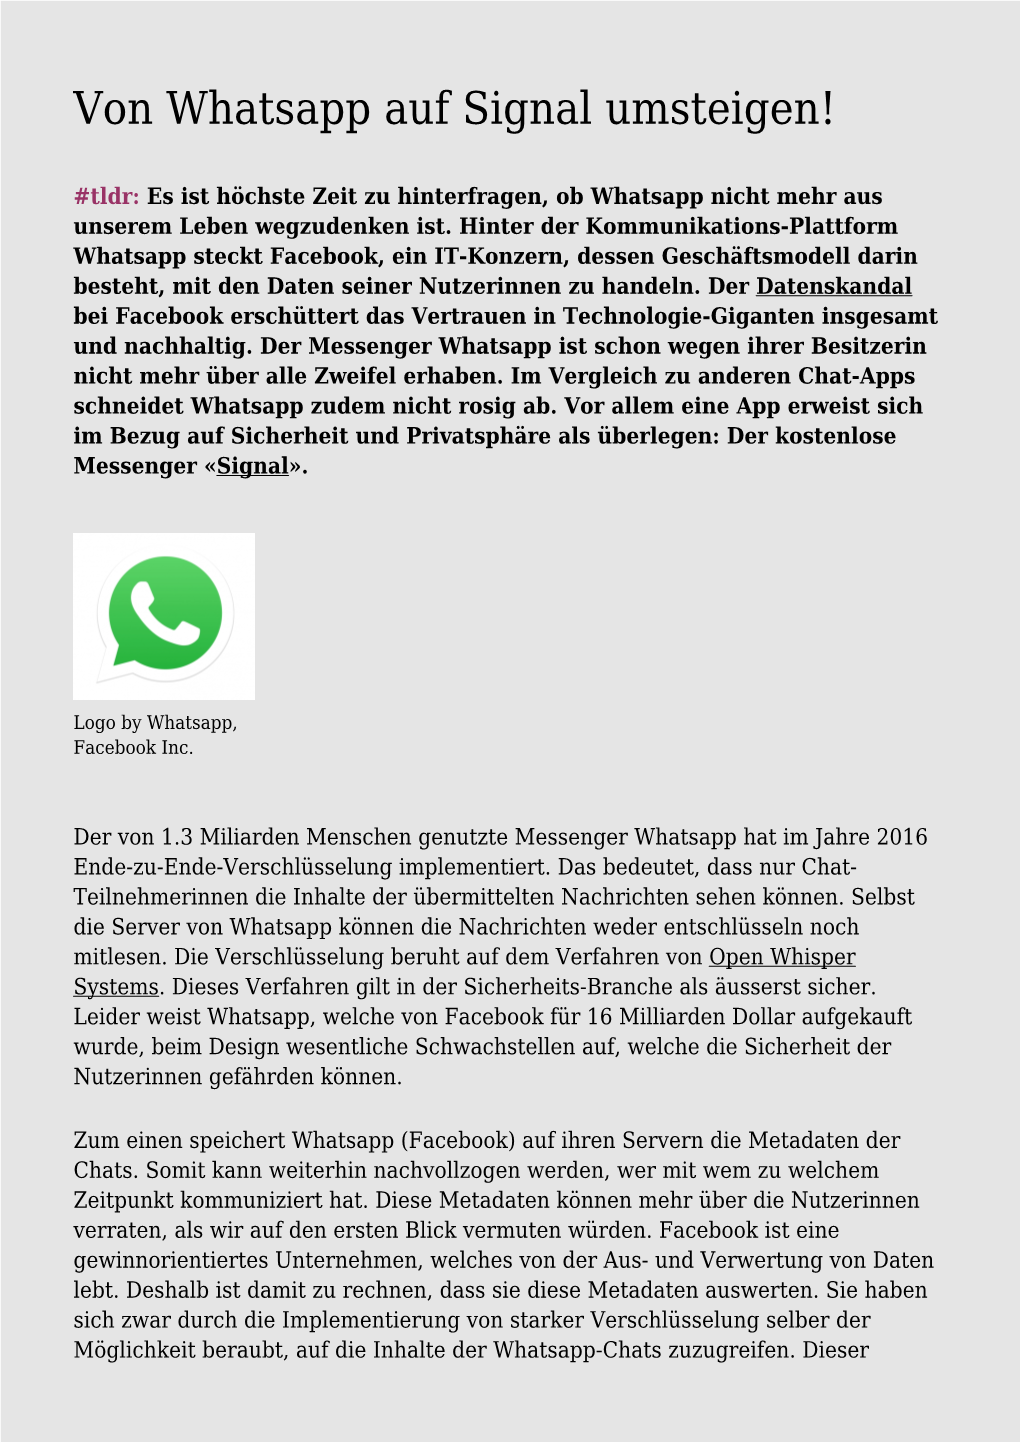 Von Whatsapp Auf Signal Umsteigen!